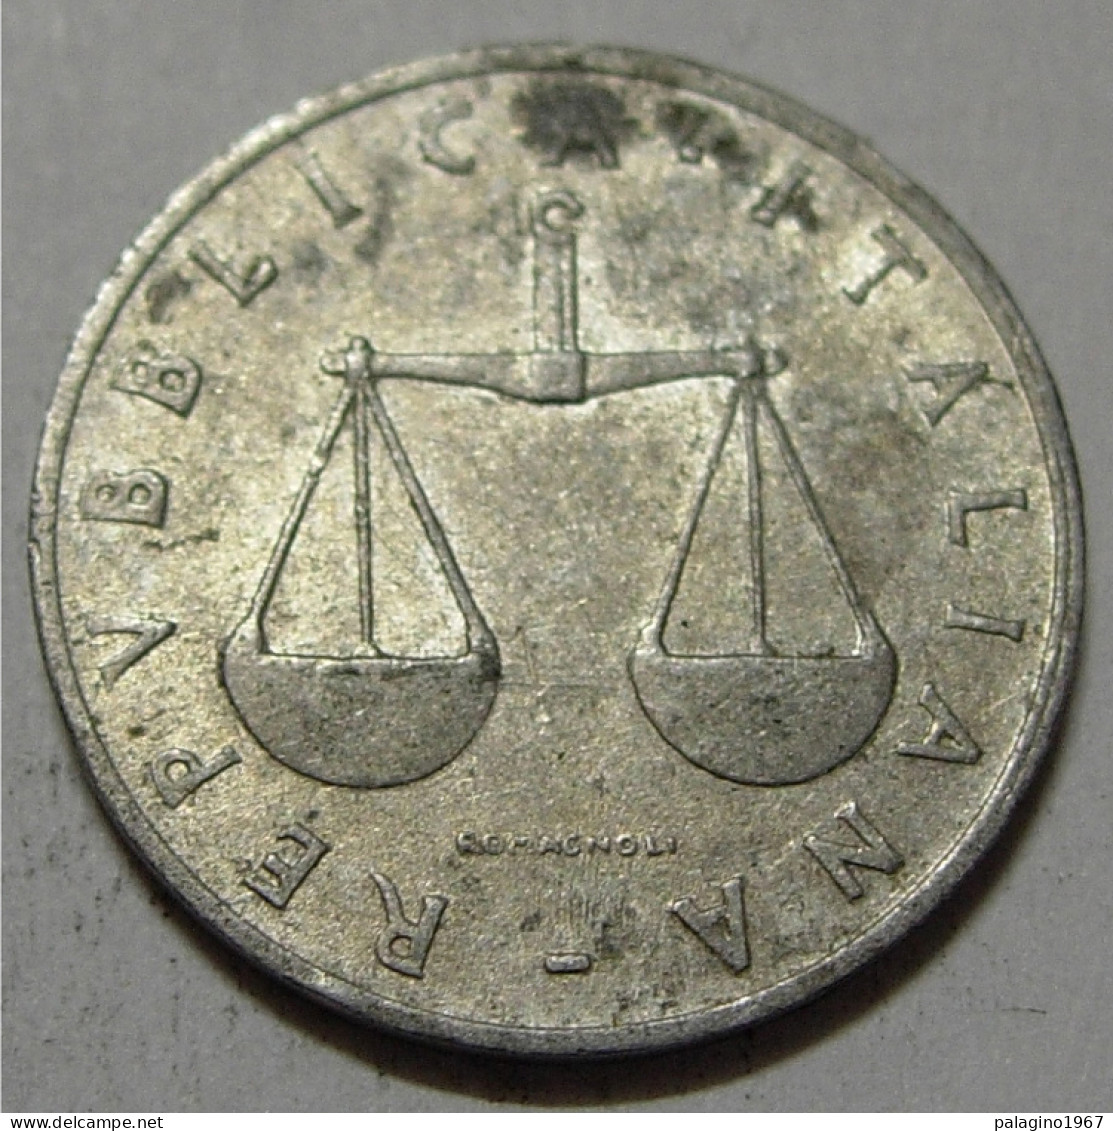 REPUBBLICA ITALIANA 1 Lira Cornucopia 1954 QBB  - 1 Lire